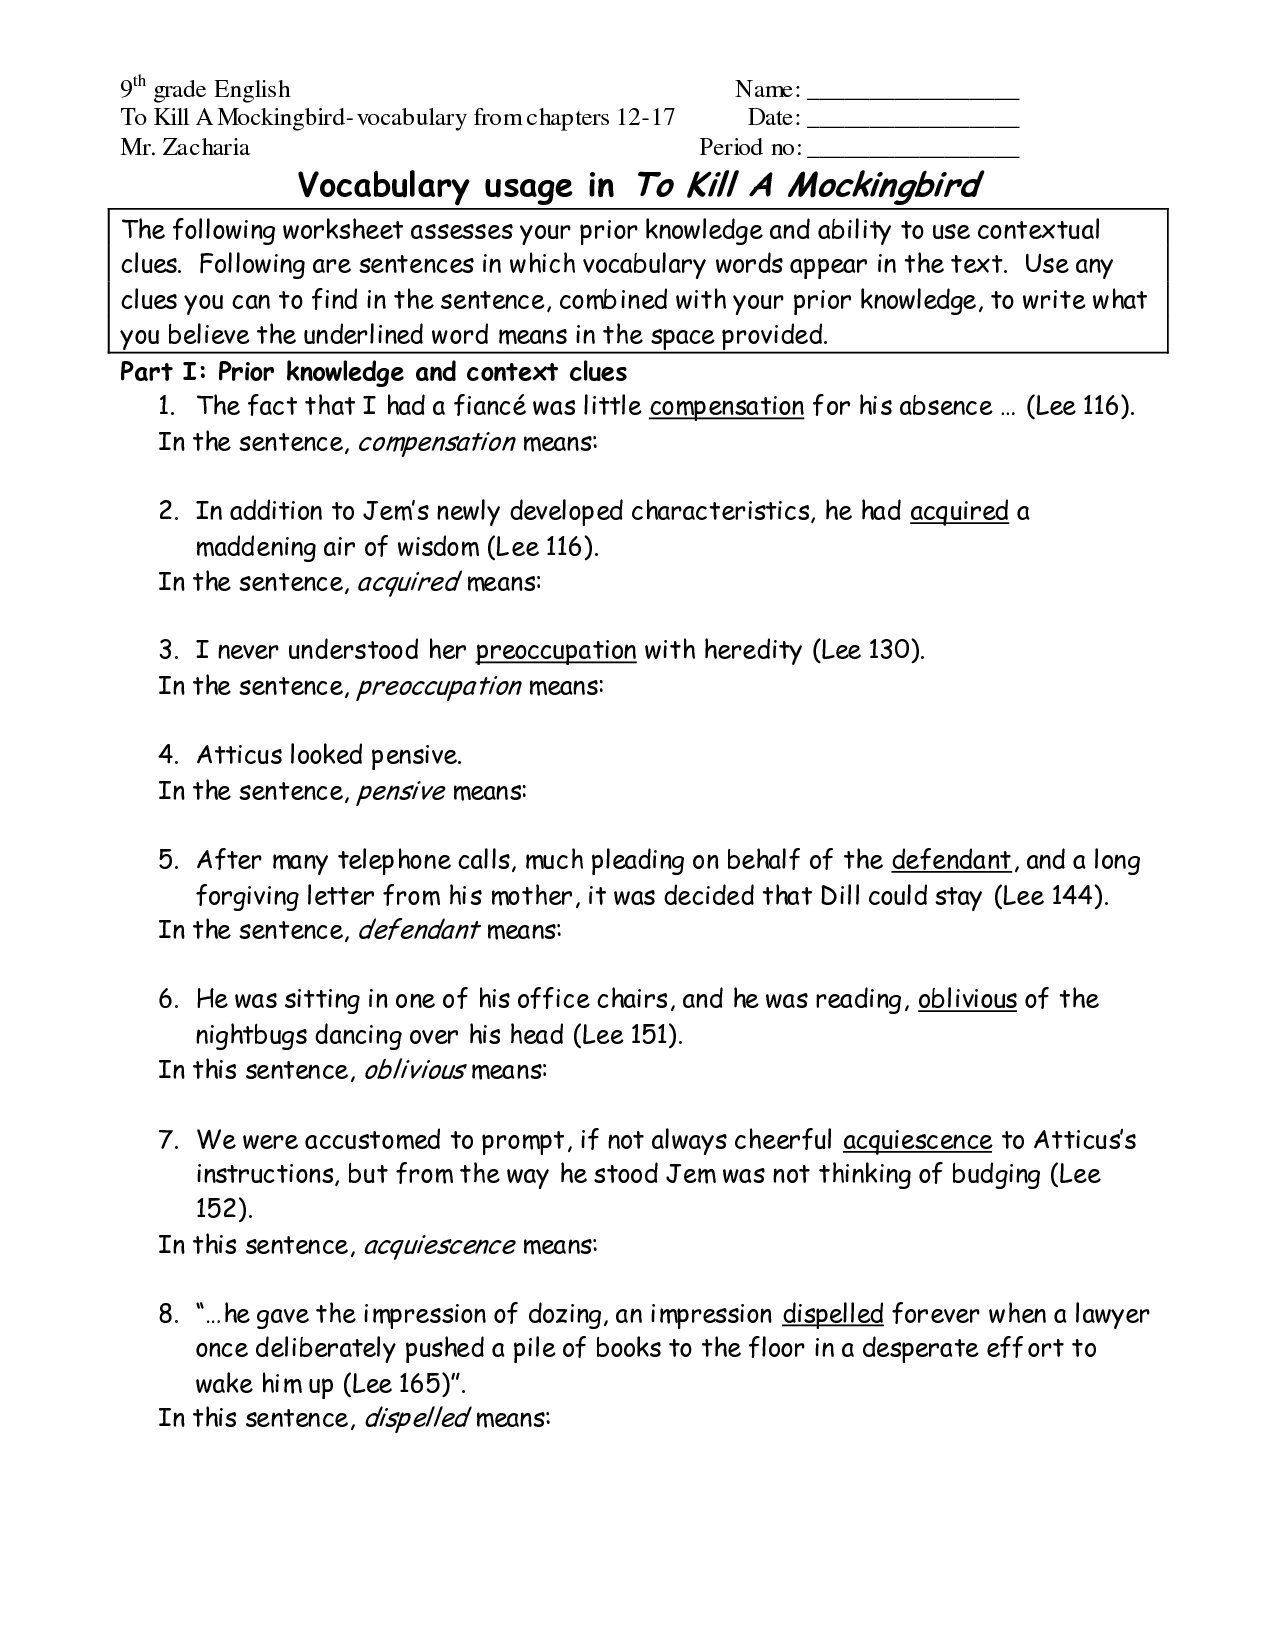 Context Clues Worksheets 9th Grade